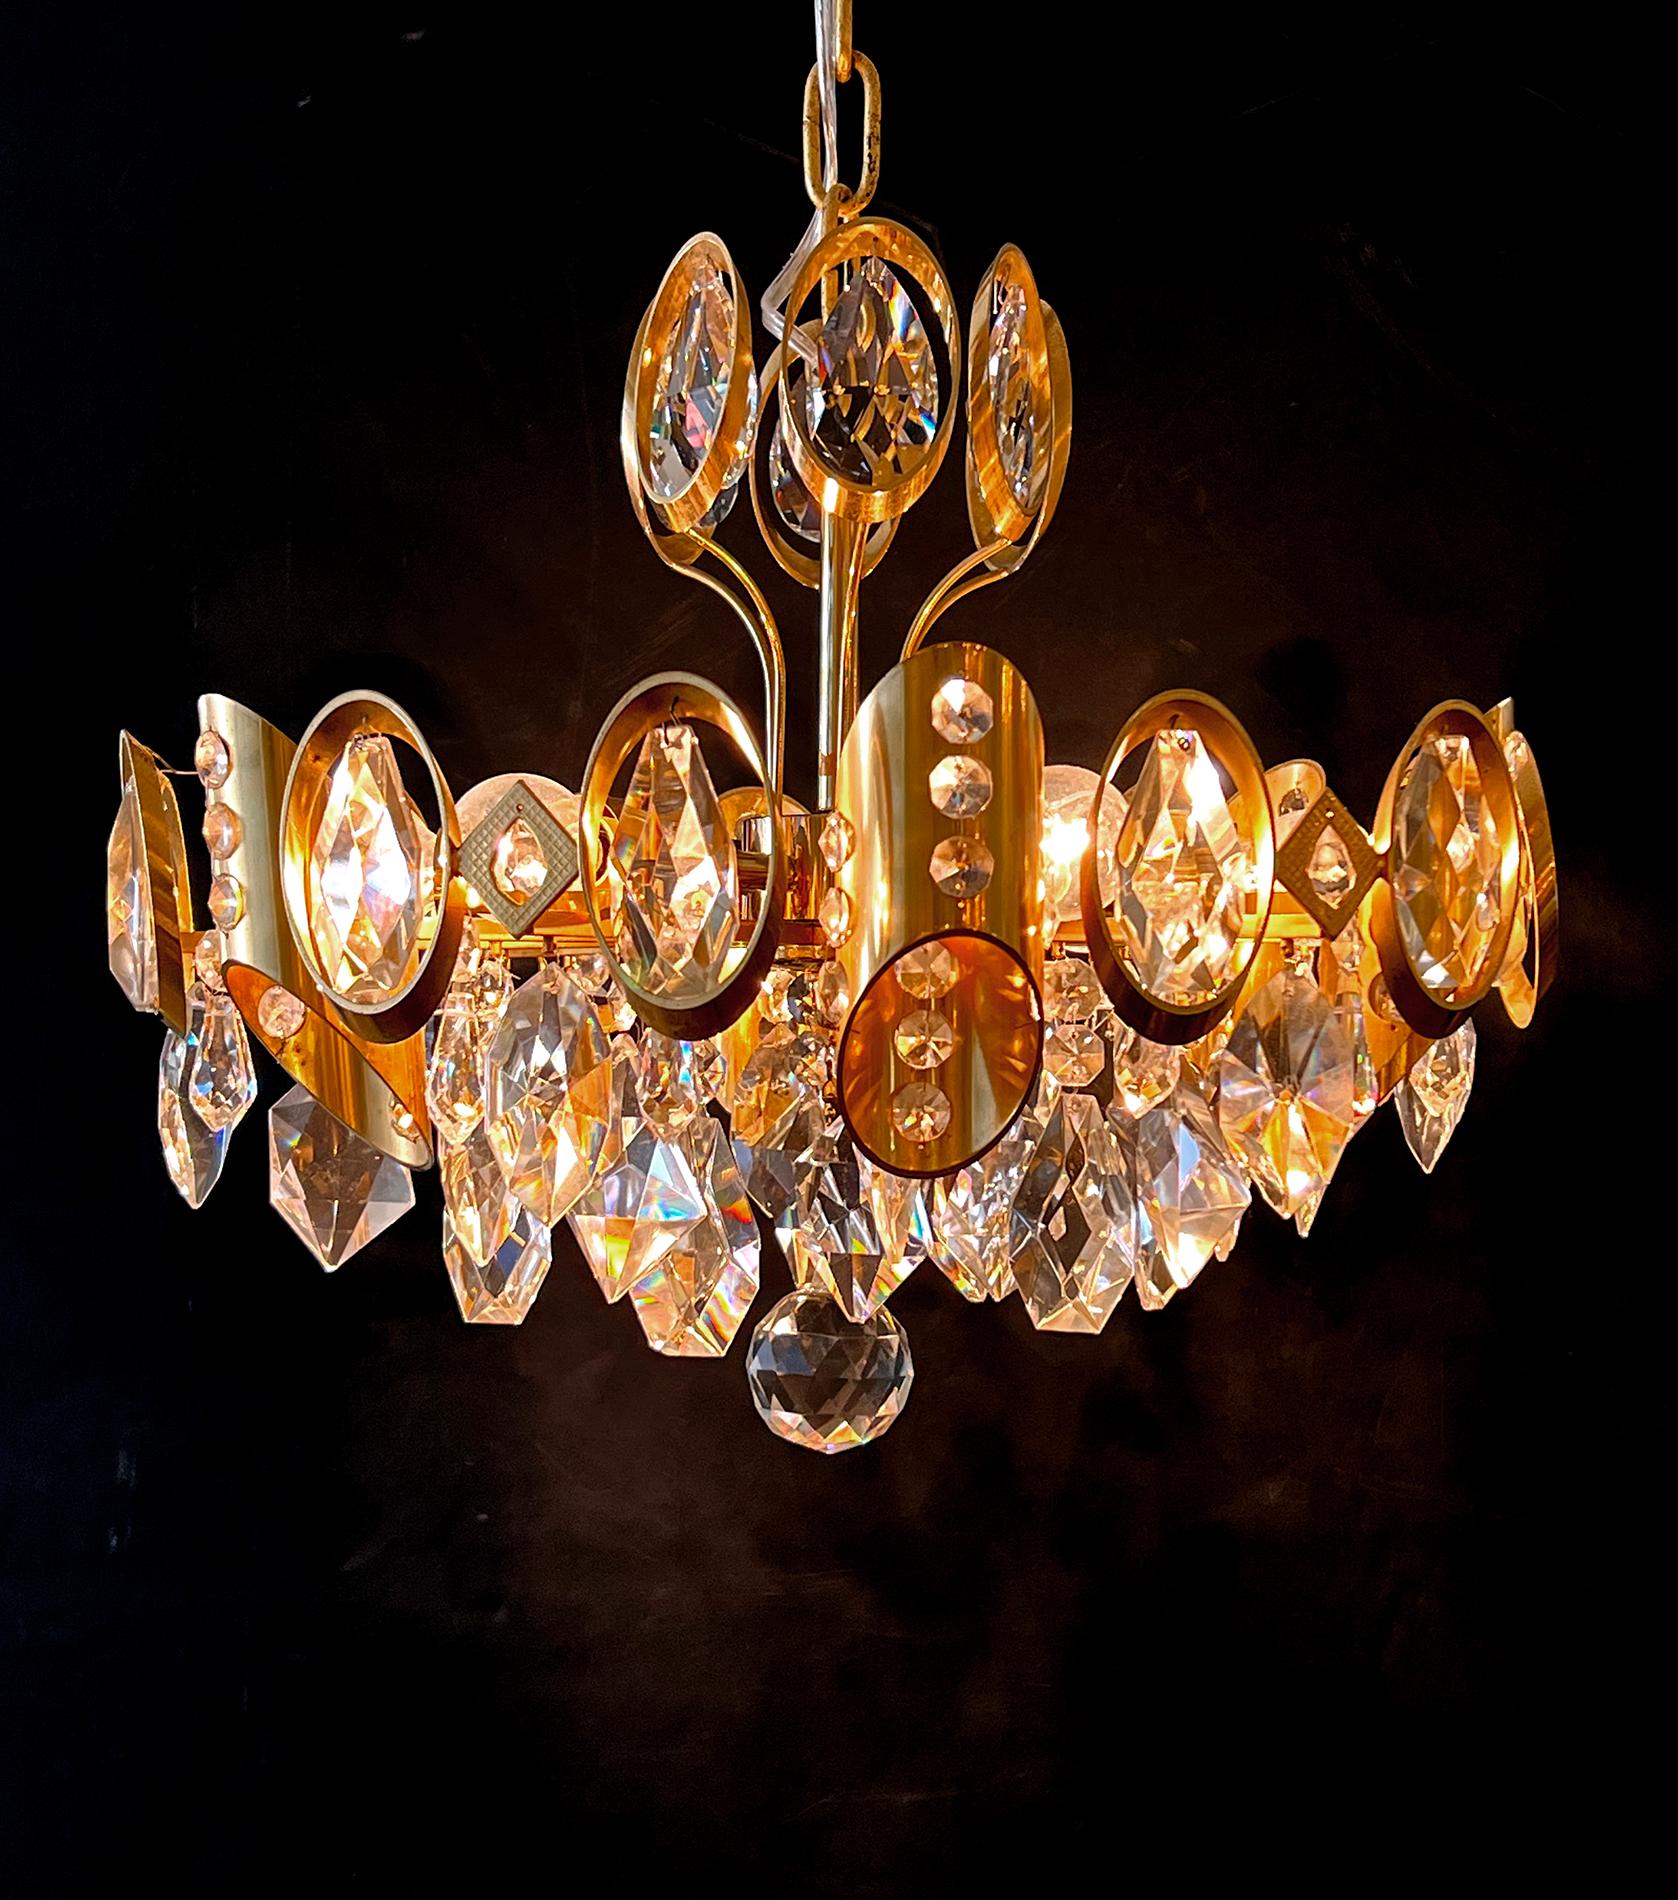 Diese stilvolle Pendelleuchte aus vergoldetem Messing und Kristall im Hollywood-Regency-Stil ist mit übergroßen, runden, facettierten Kristallelementen ausgestattet und eignet sich hervorragend für ein Puderzimmer, einen kleinen Flur oder ein